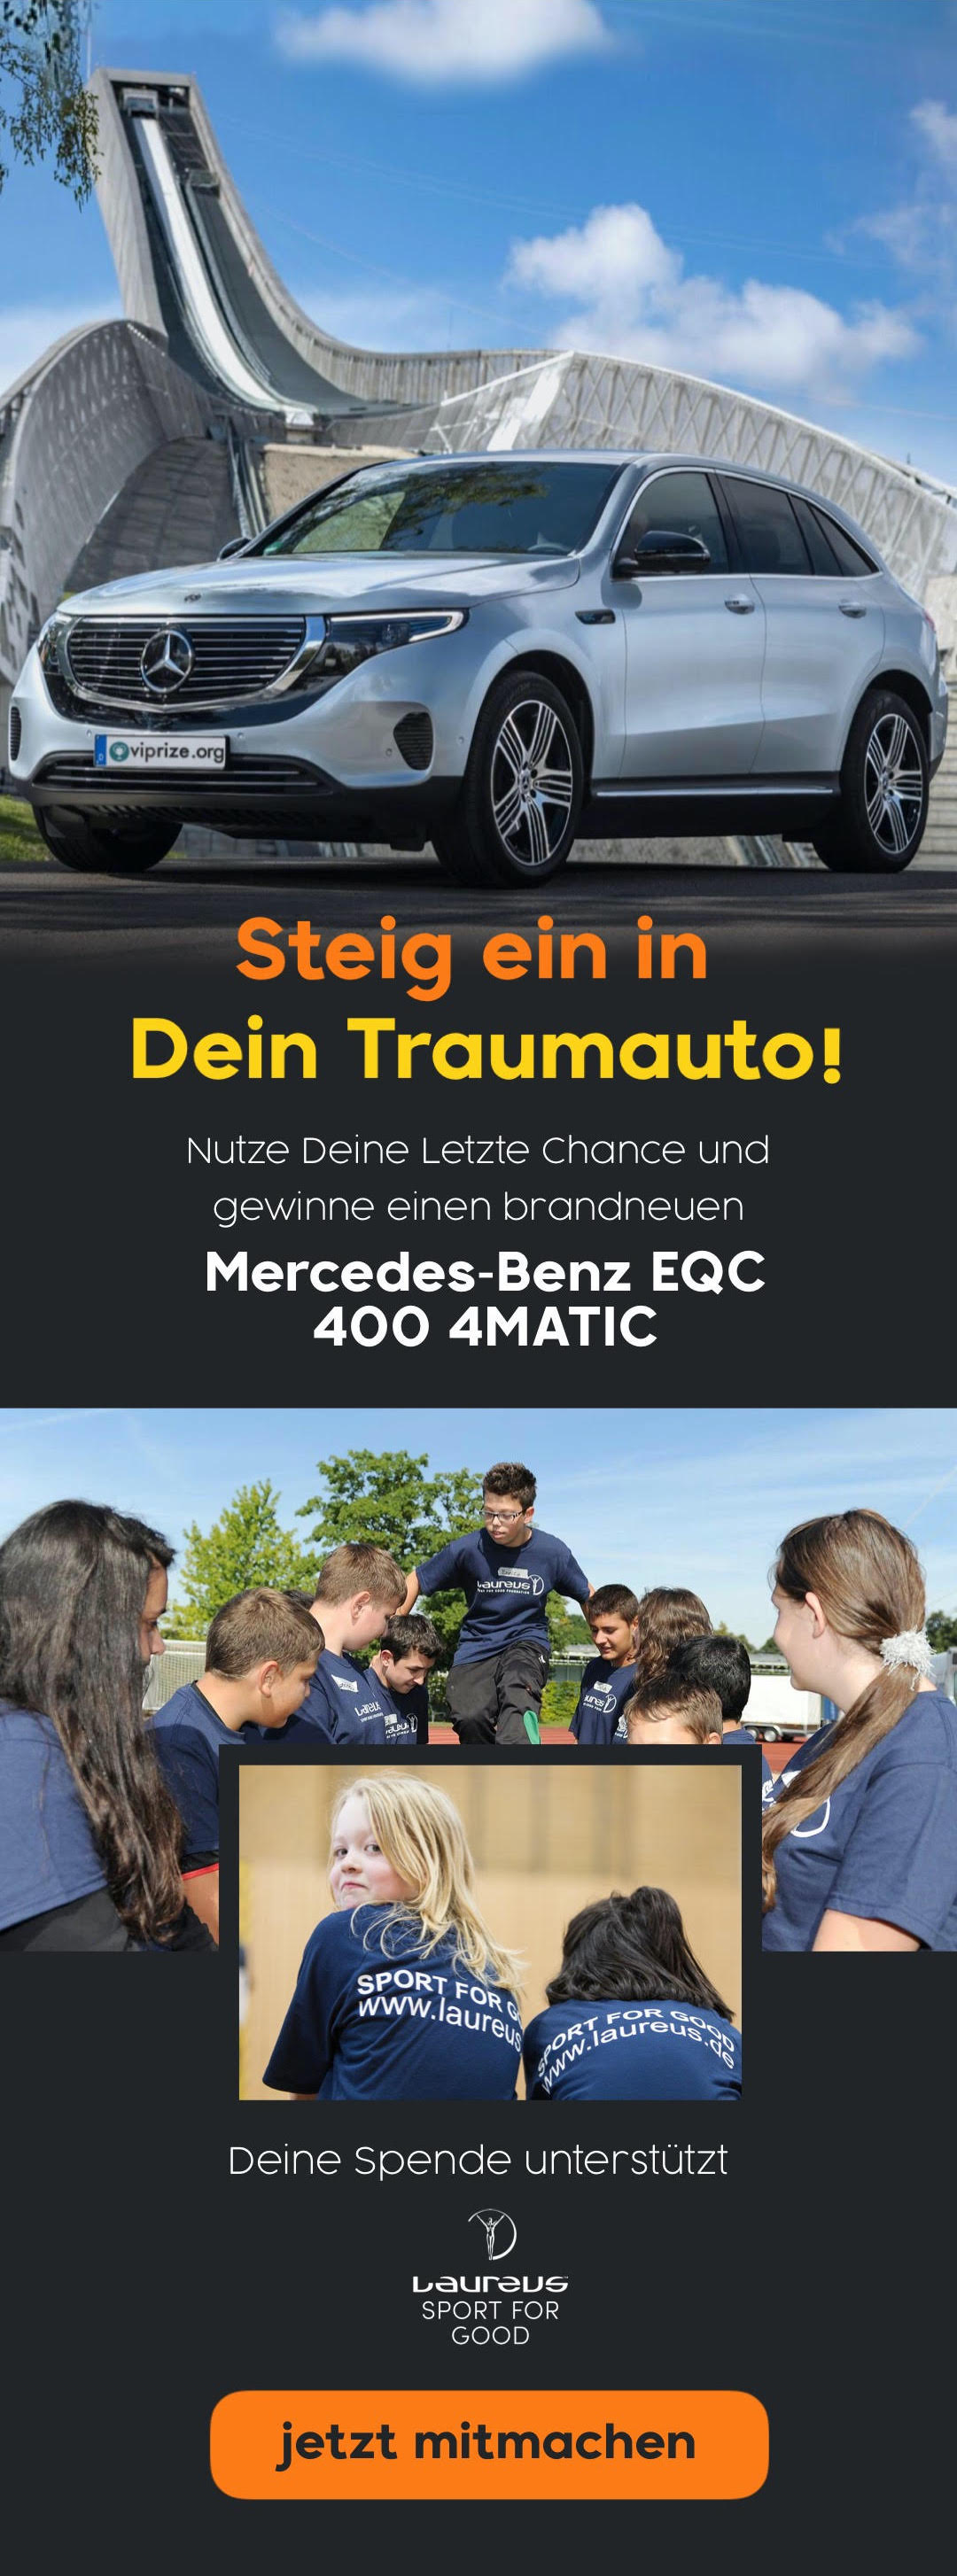 Unterst?tze Laureus Sport for Good und fahre mit einem vollelektrischen Mercedes-Benz EQC nach Hause!